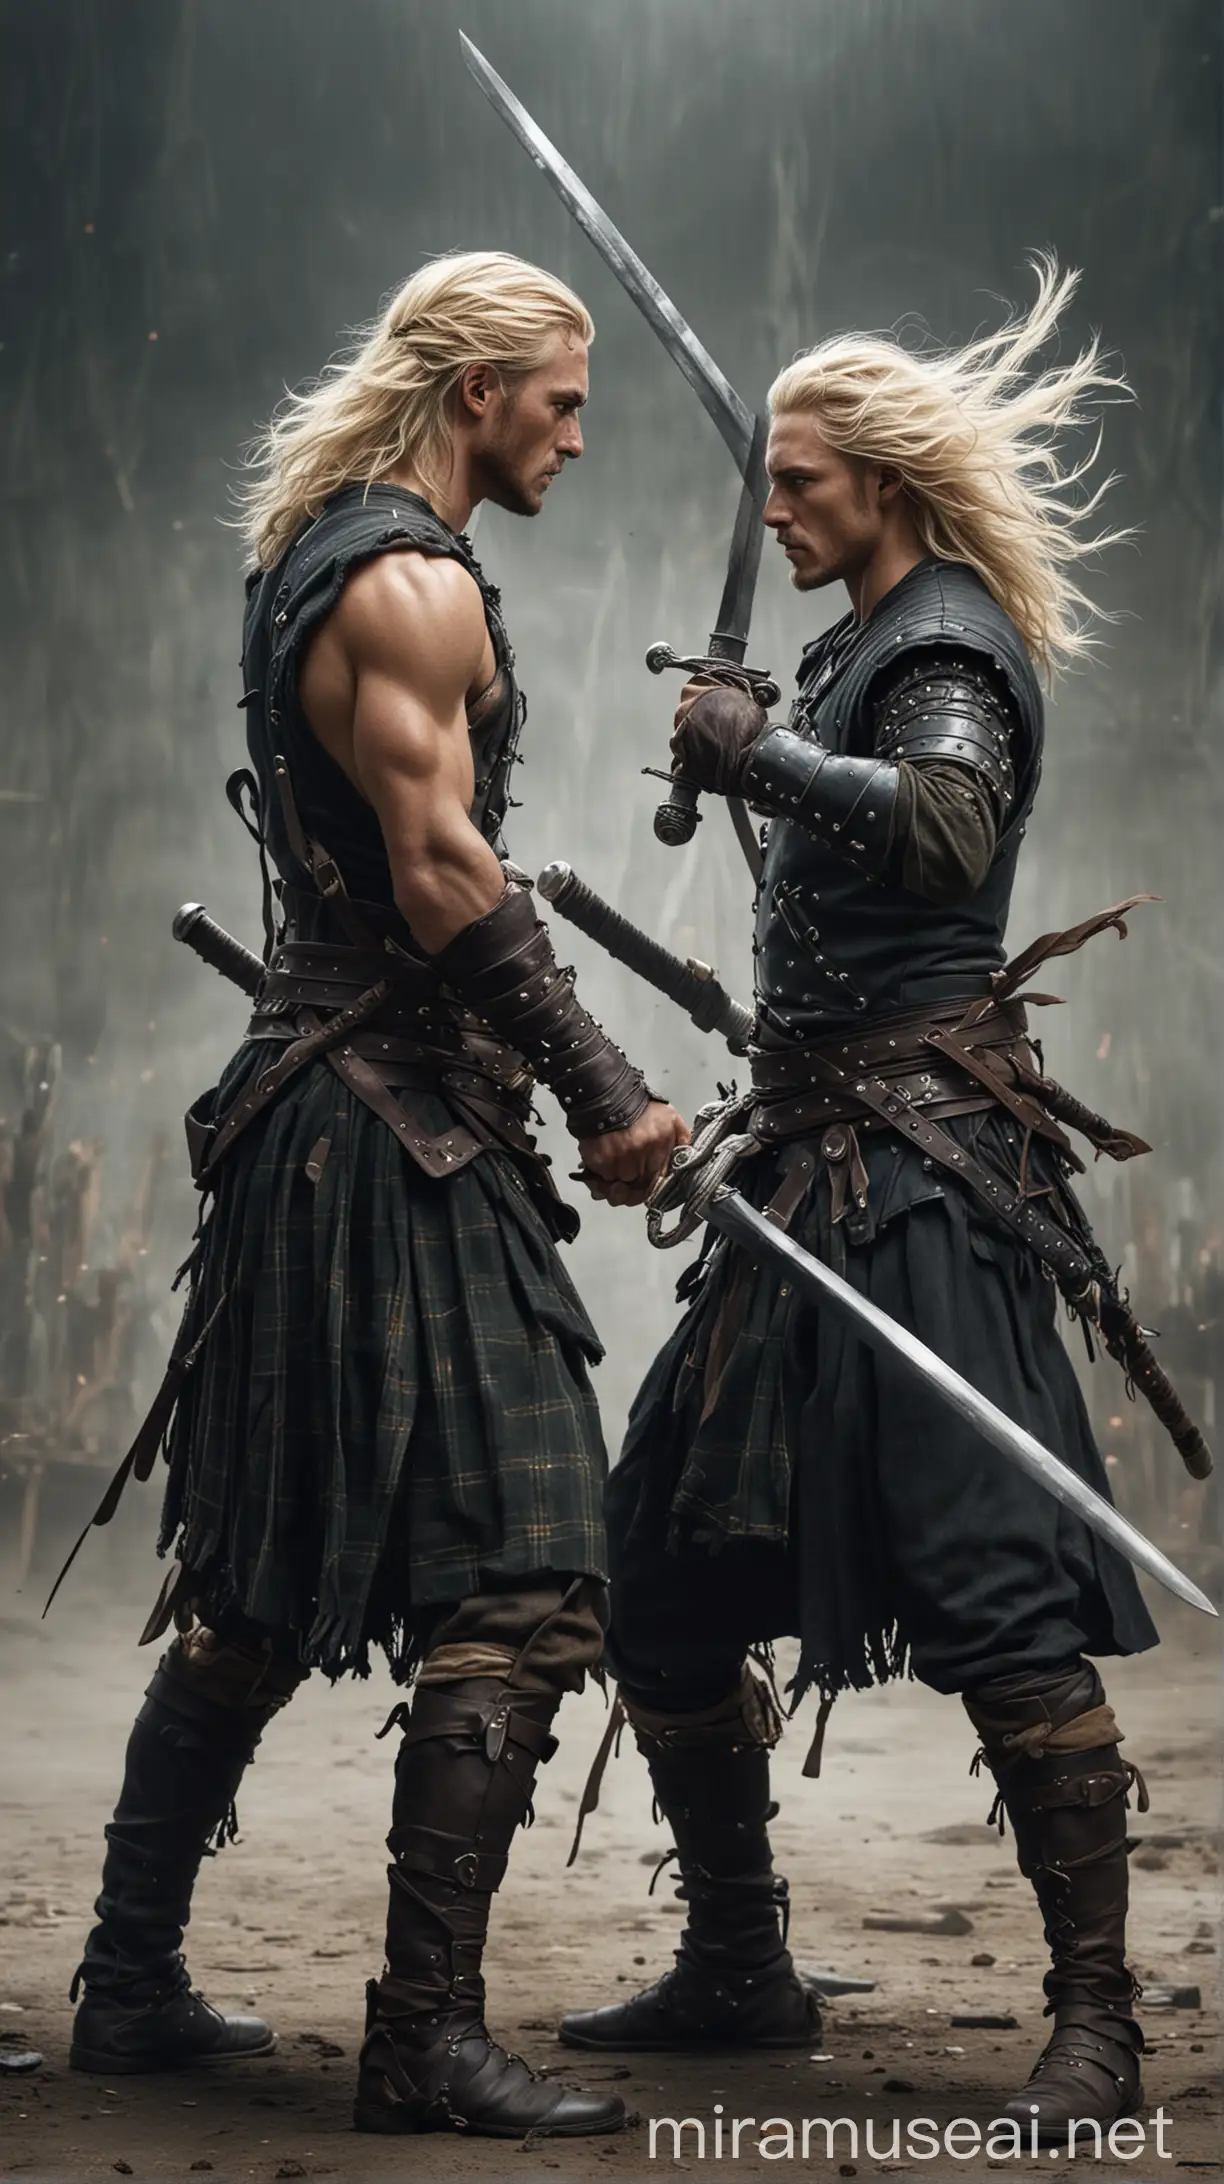 Intense Sword Fight Between Handsome Scottish Warriors